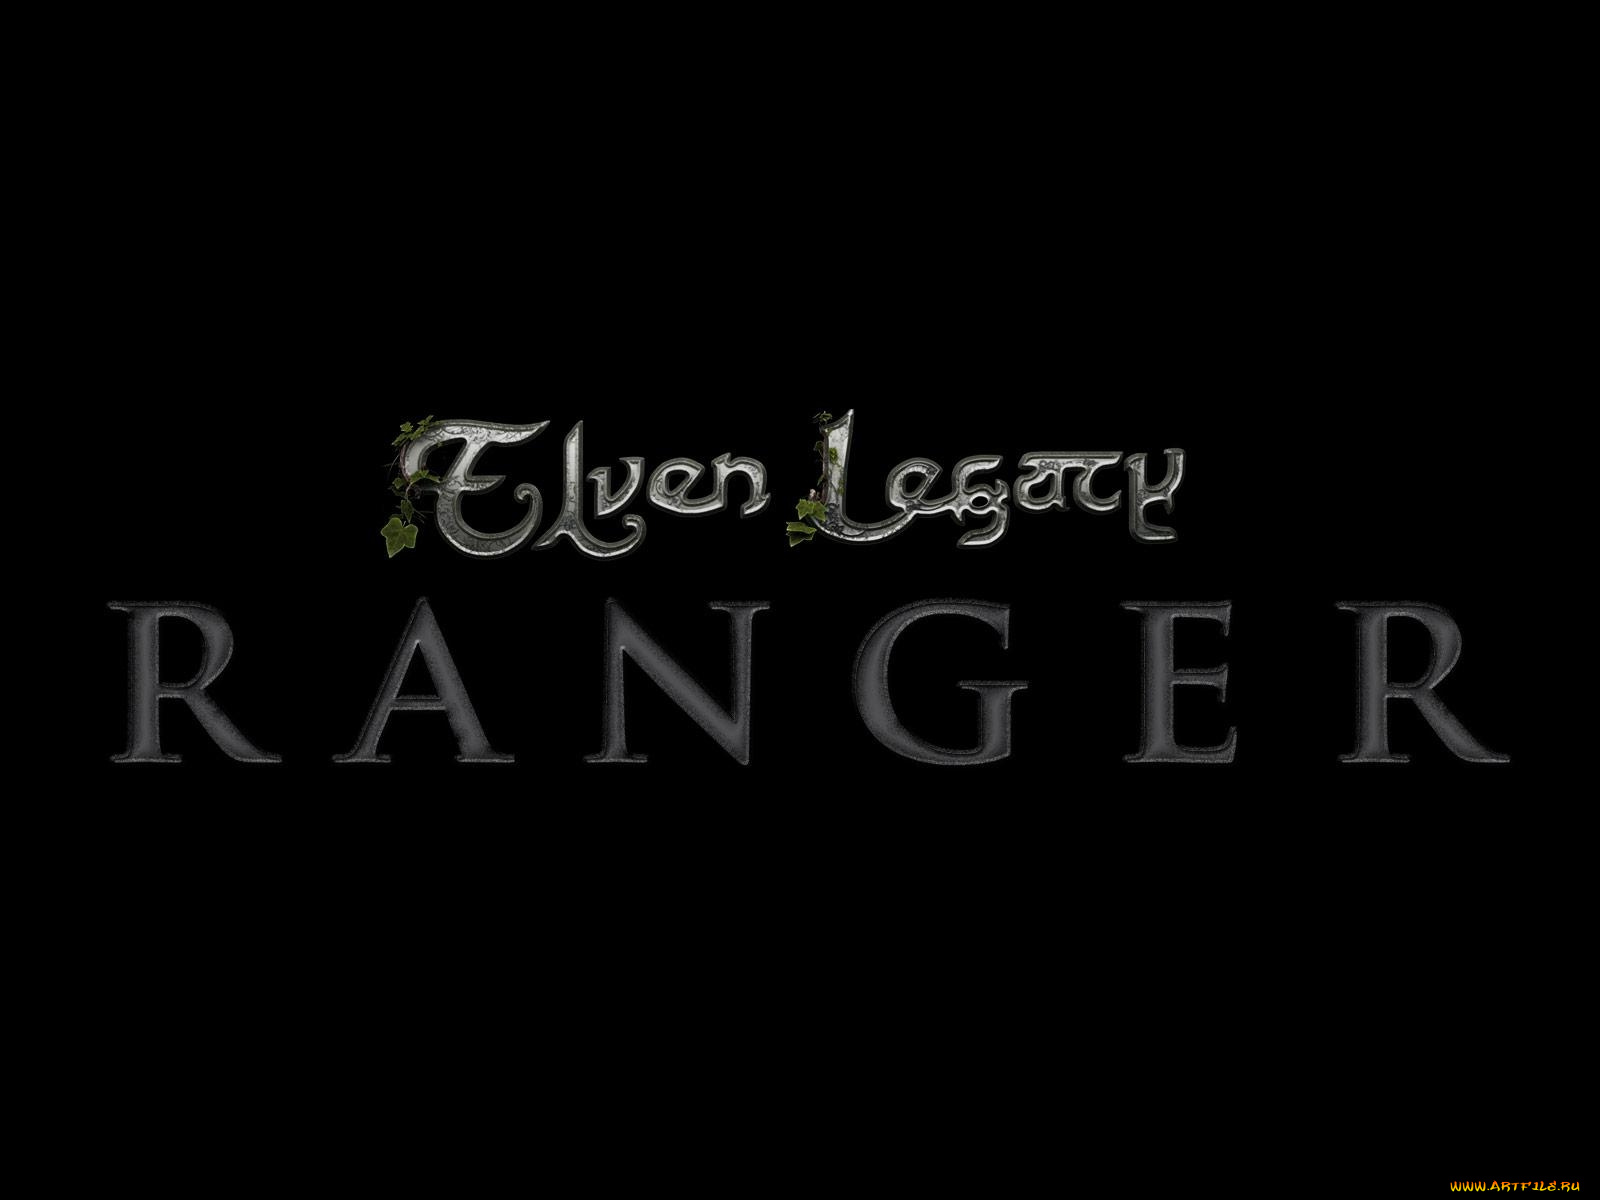 elven, legacy, ranger, видео, игры